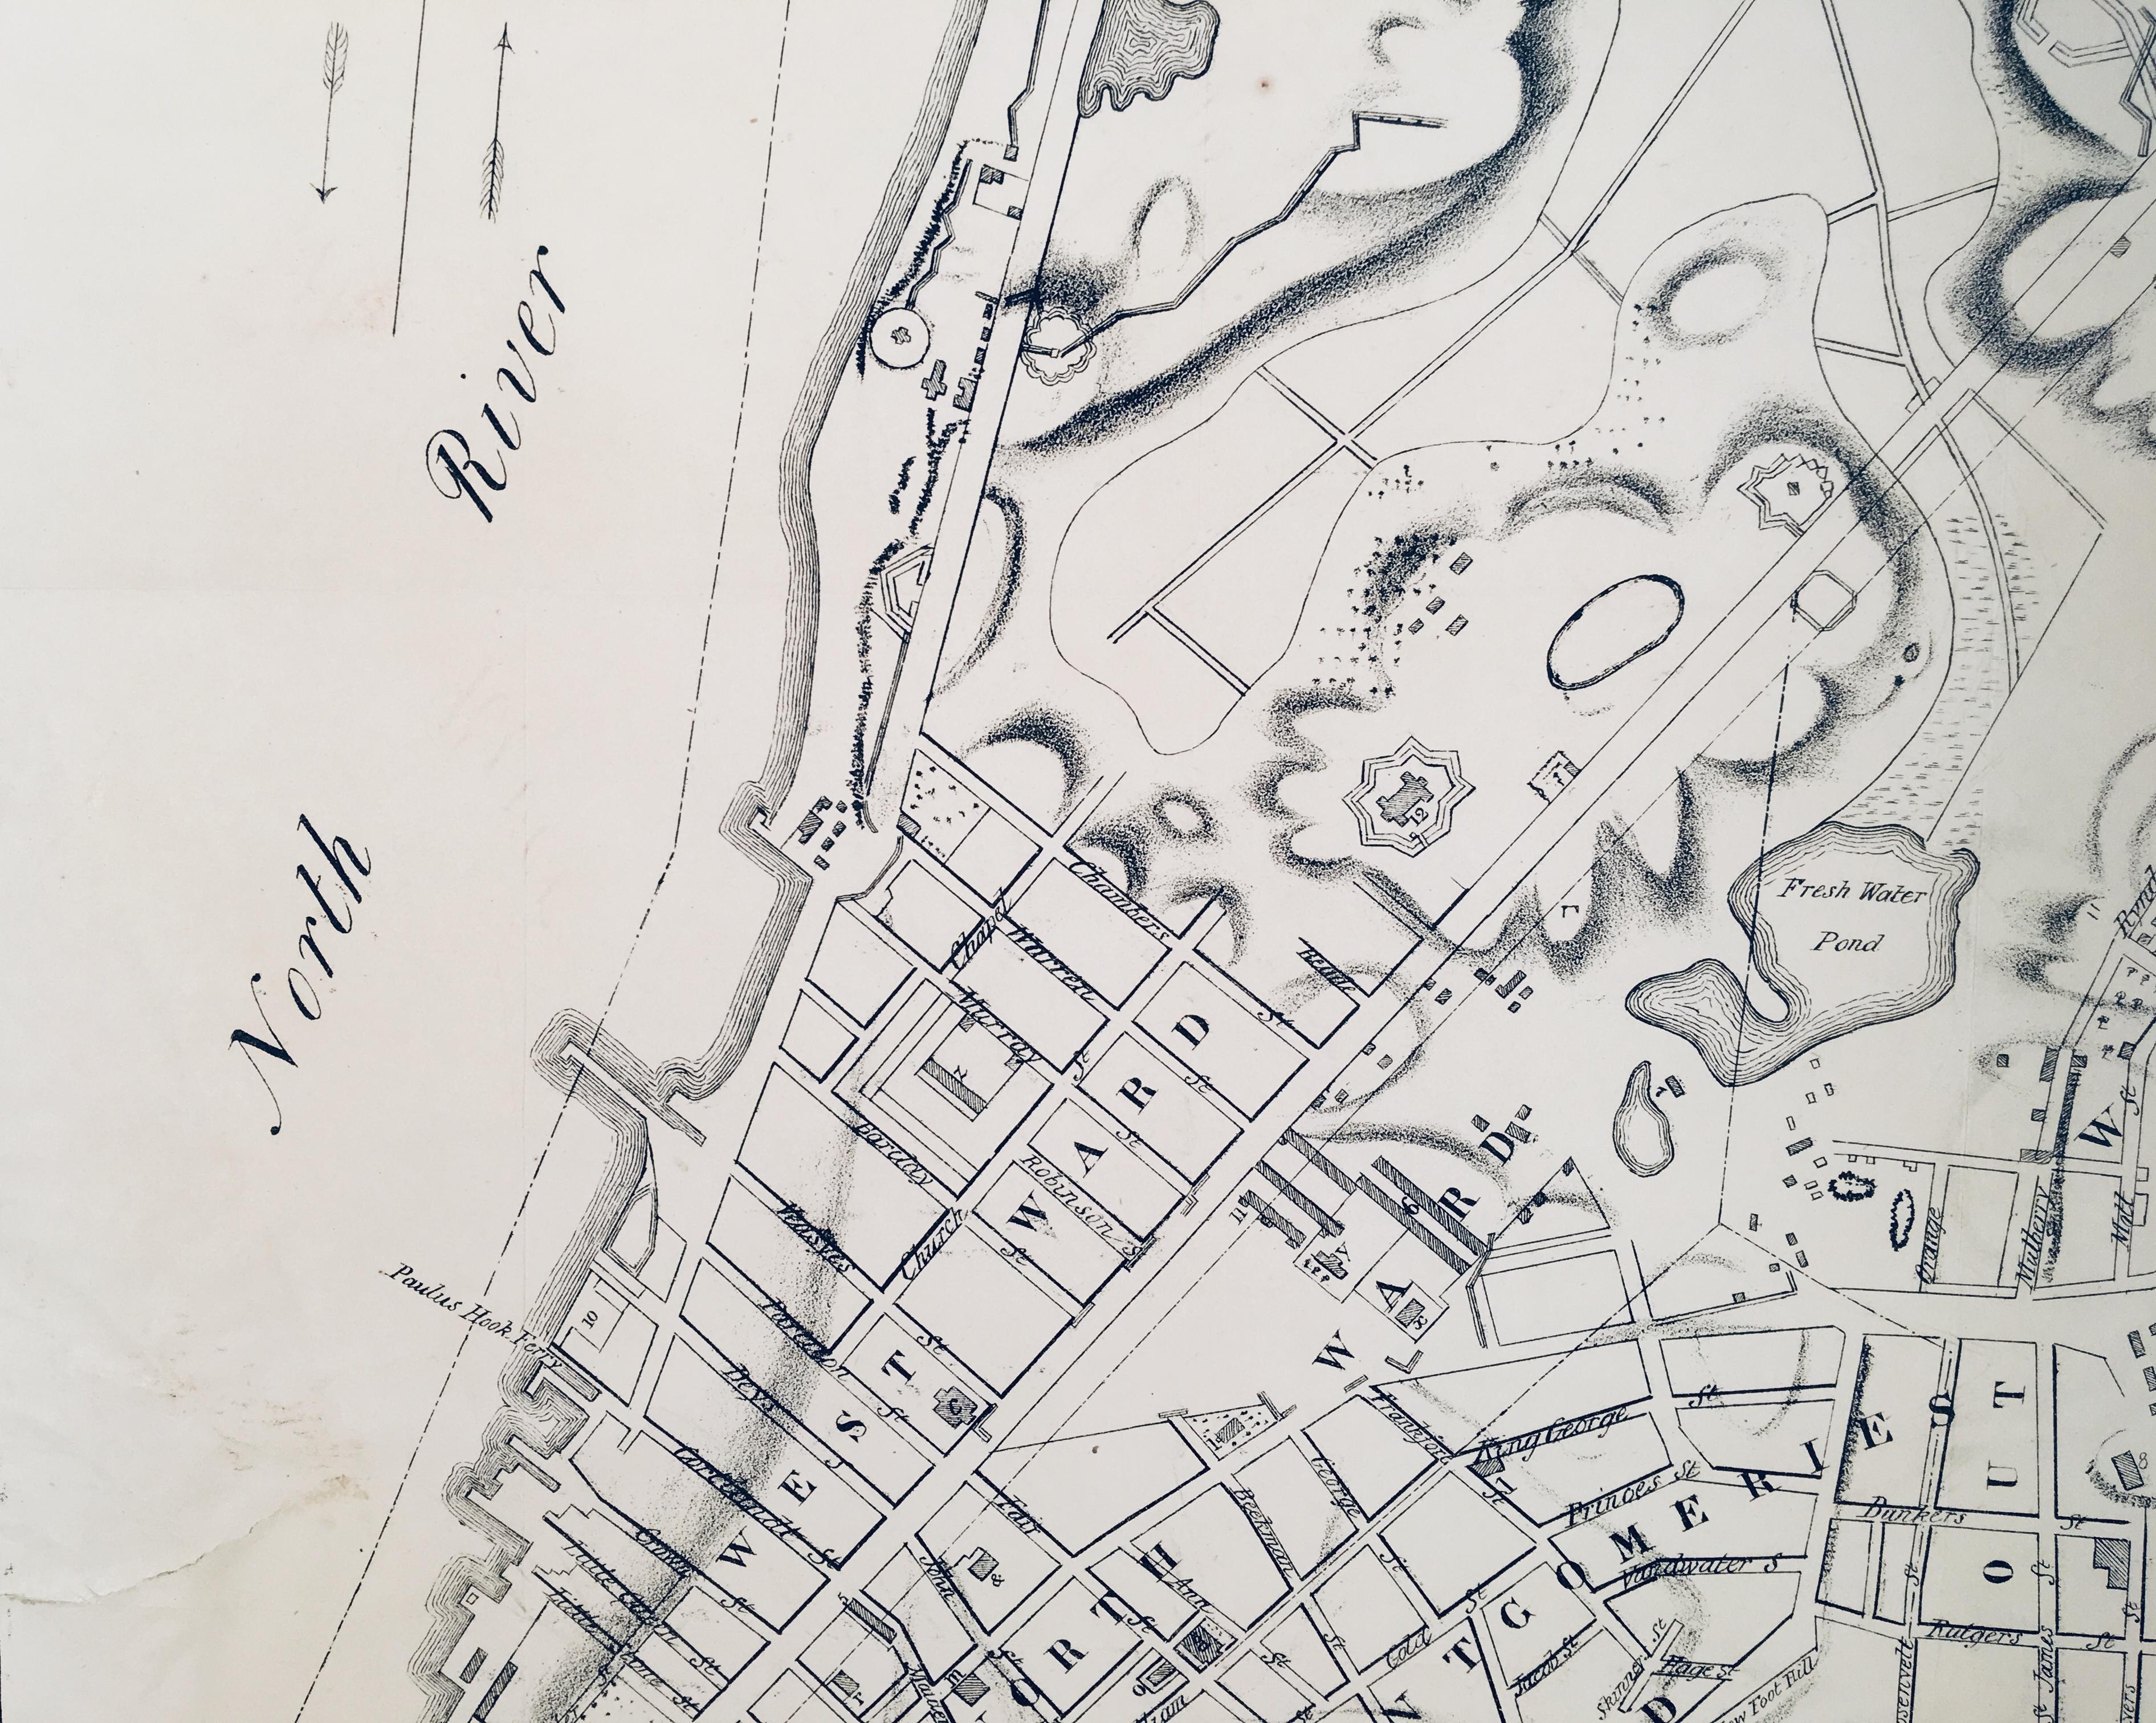 1848 Lithographie von George Hayward, veröffentlicht von David  P. Valentine's Handbuch. Auf der Grundlage der ursprünglichen Vermessung von 1782 und der 1785 von John Hills gezeichneten Karte.  Detailreiche Karte von New York City mit Fort George,